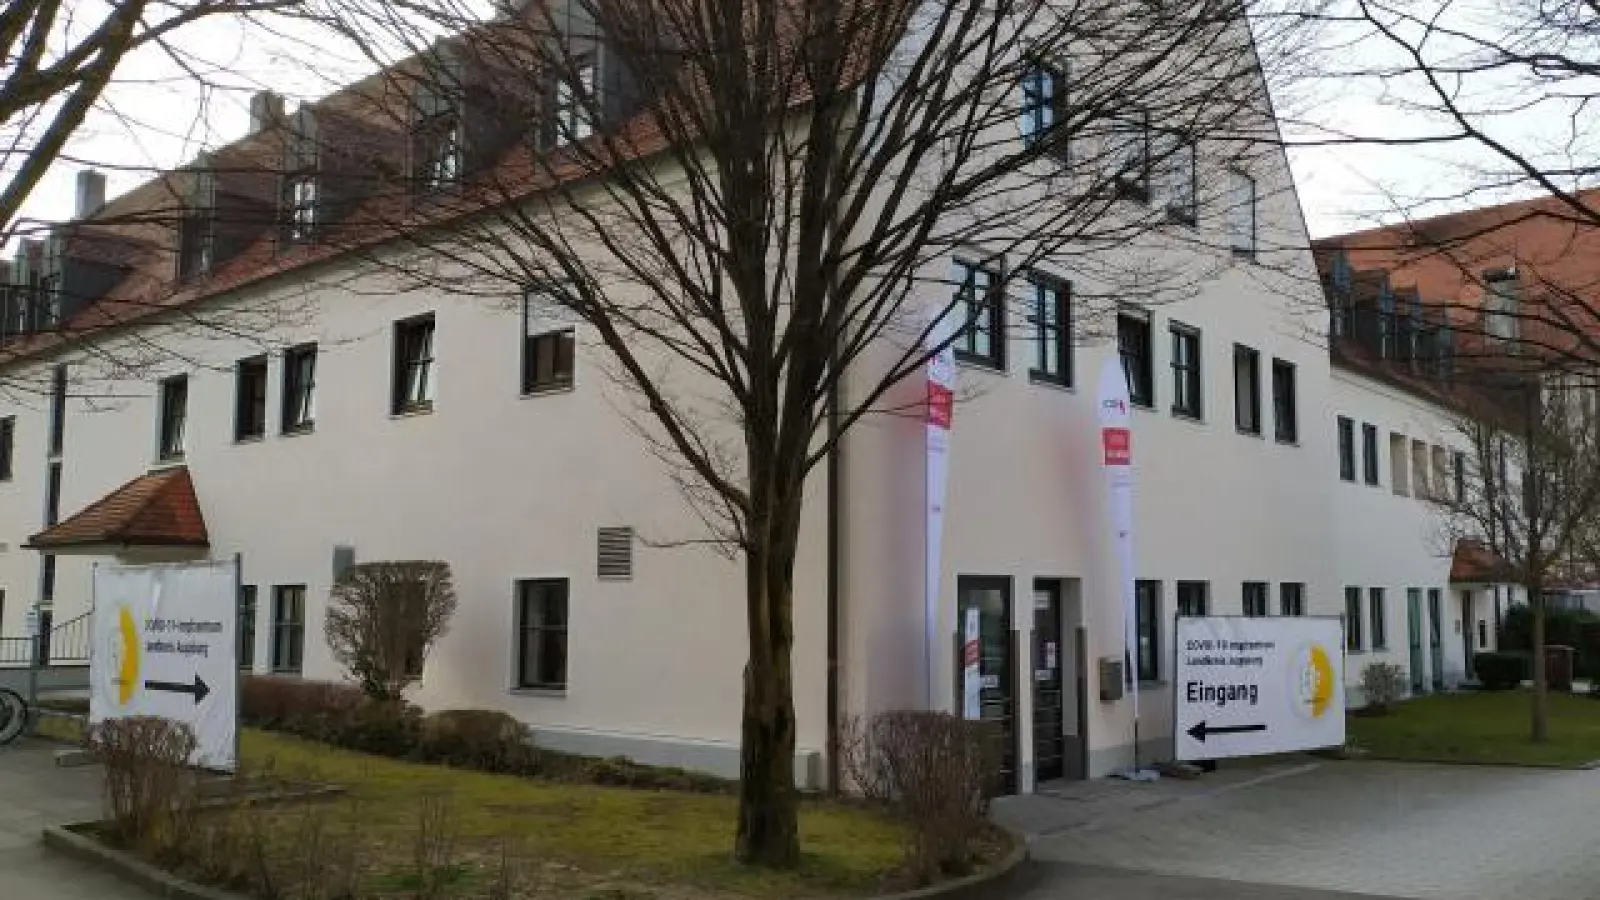 Das zweite Impfzentrum   im Landkreis Augsburger öffnet: In Bobingen werden ab Montag Bürger aus dem Augsburger Umland geimpft. (öffnet: In Bobingen werden ab Montag Bürger aus dem Augsburger Umland geimpft.)